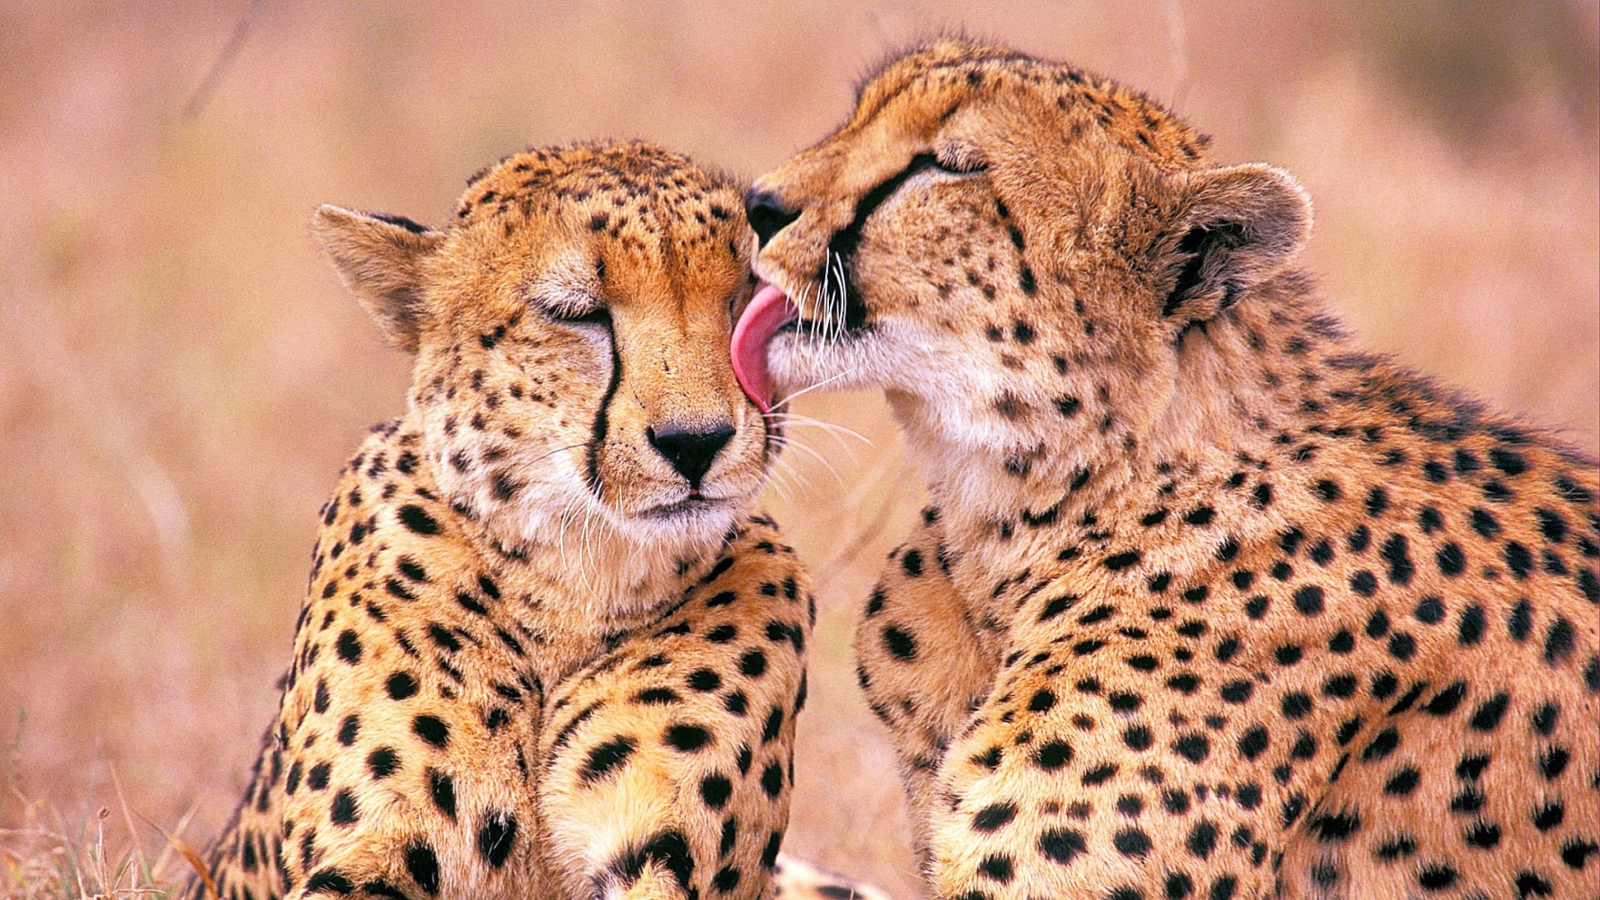 Das South African Cheetahs Wallpaper 1600x900